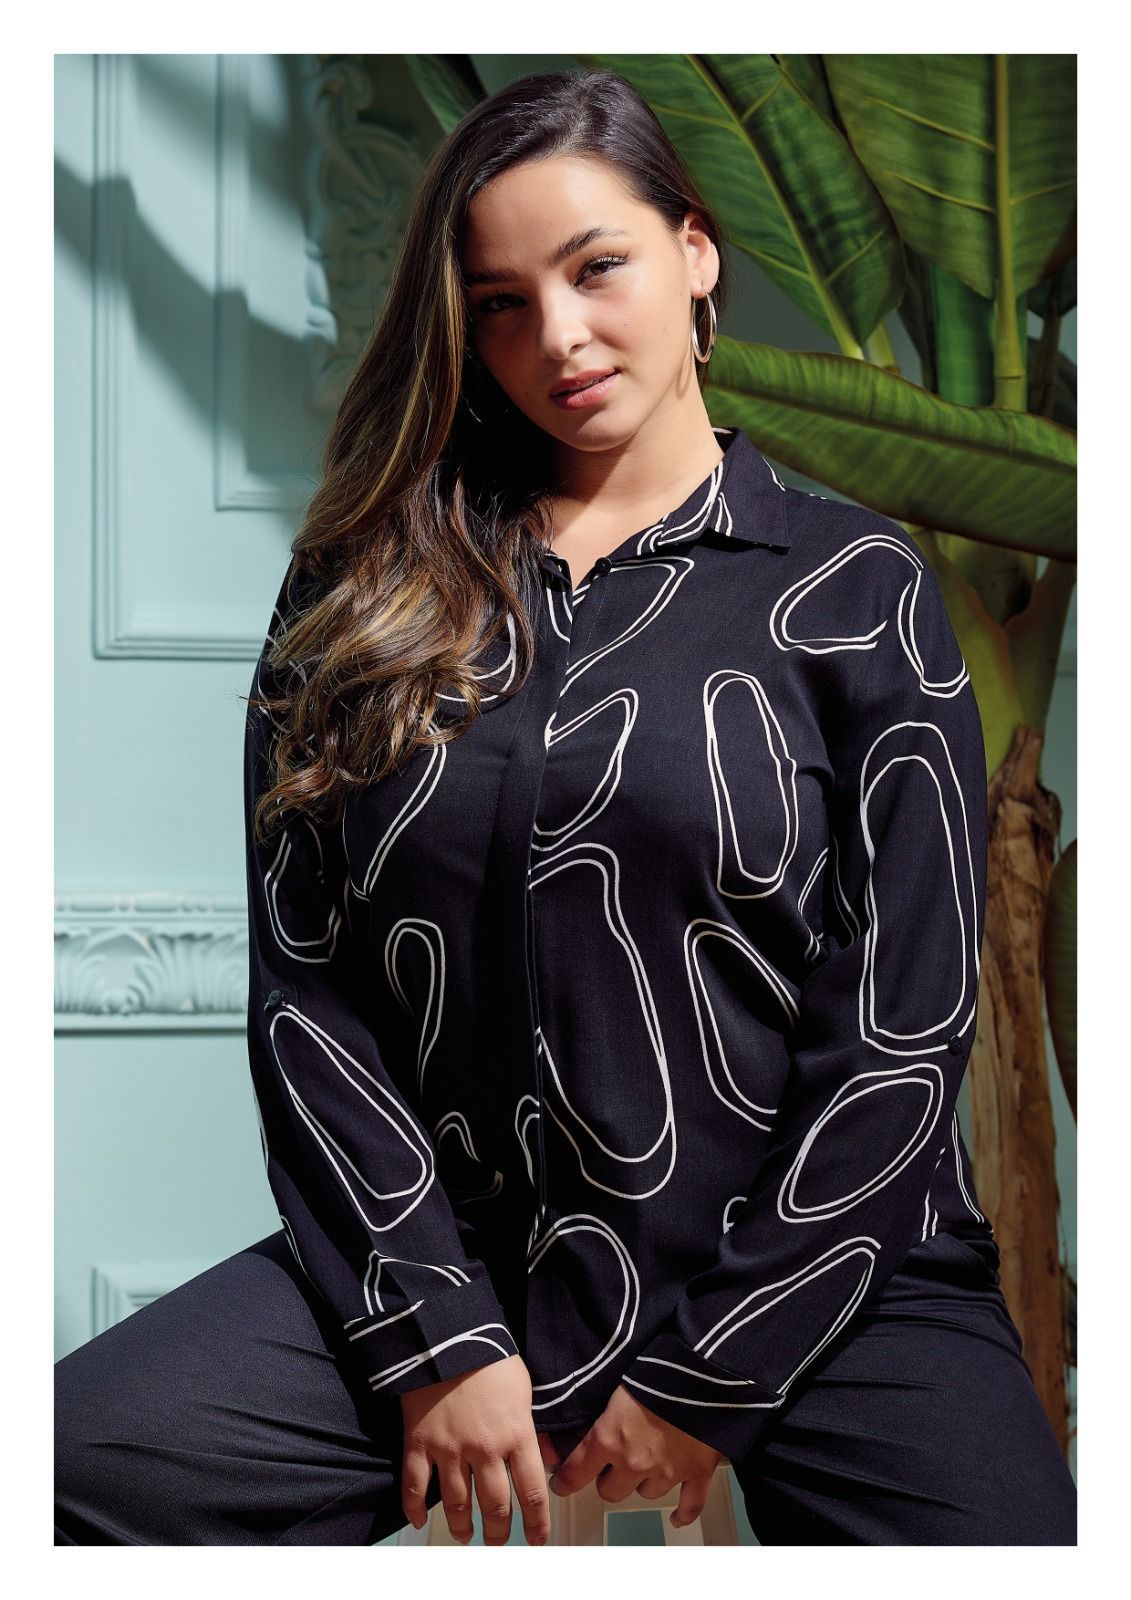 Γυναικείο κλασικό πουκάμισο βισκόζη σε μεγάλα μεγέθη - Κύκλους